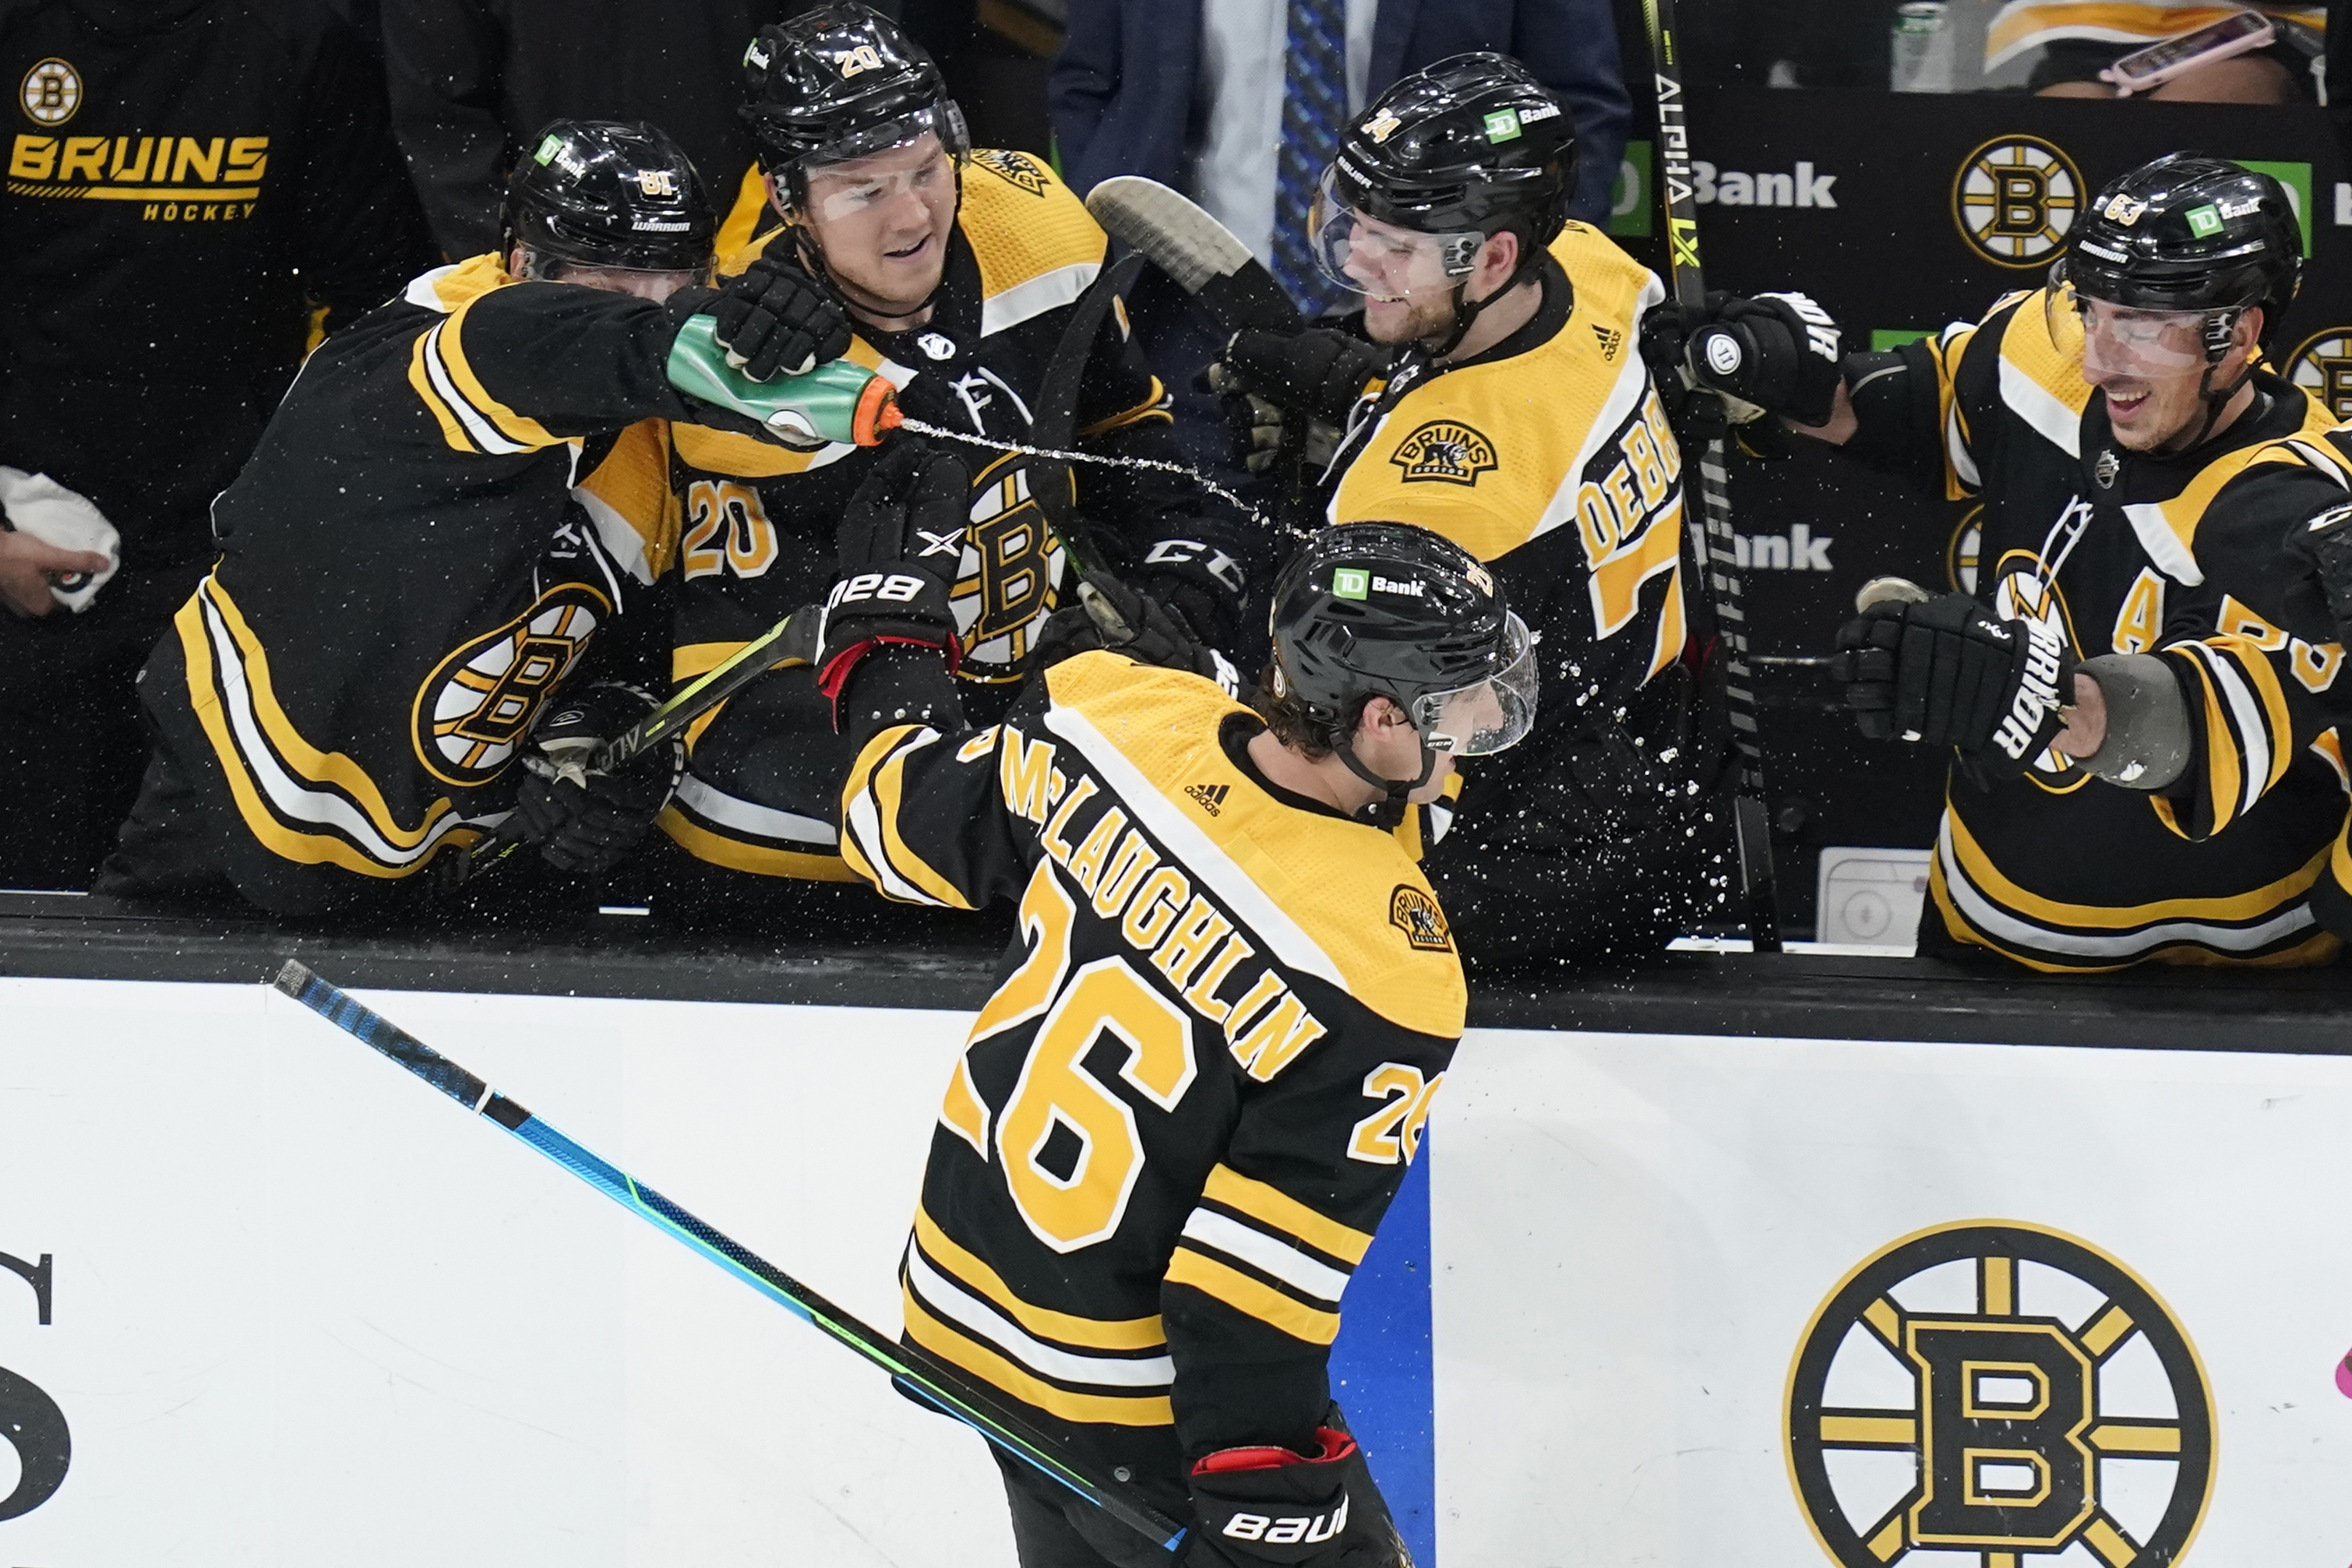 Giroux scores, Senators beat Bruins 7-5 in home opener